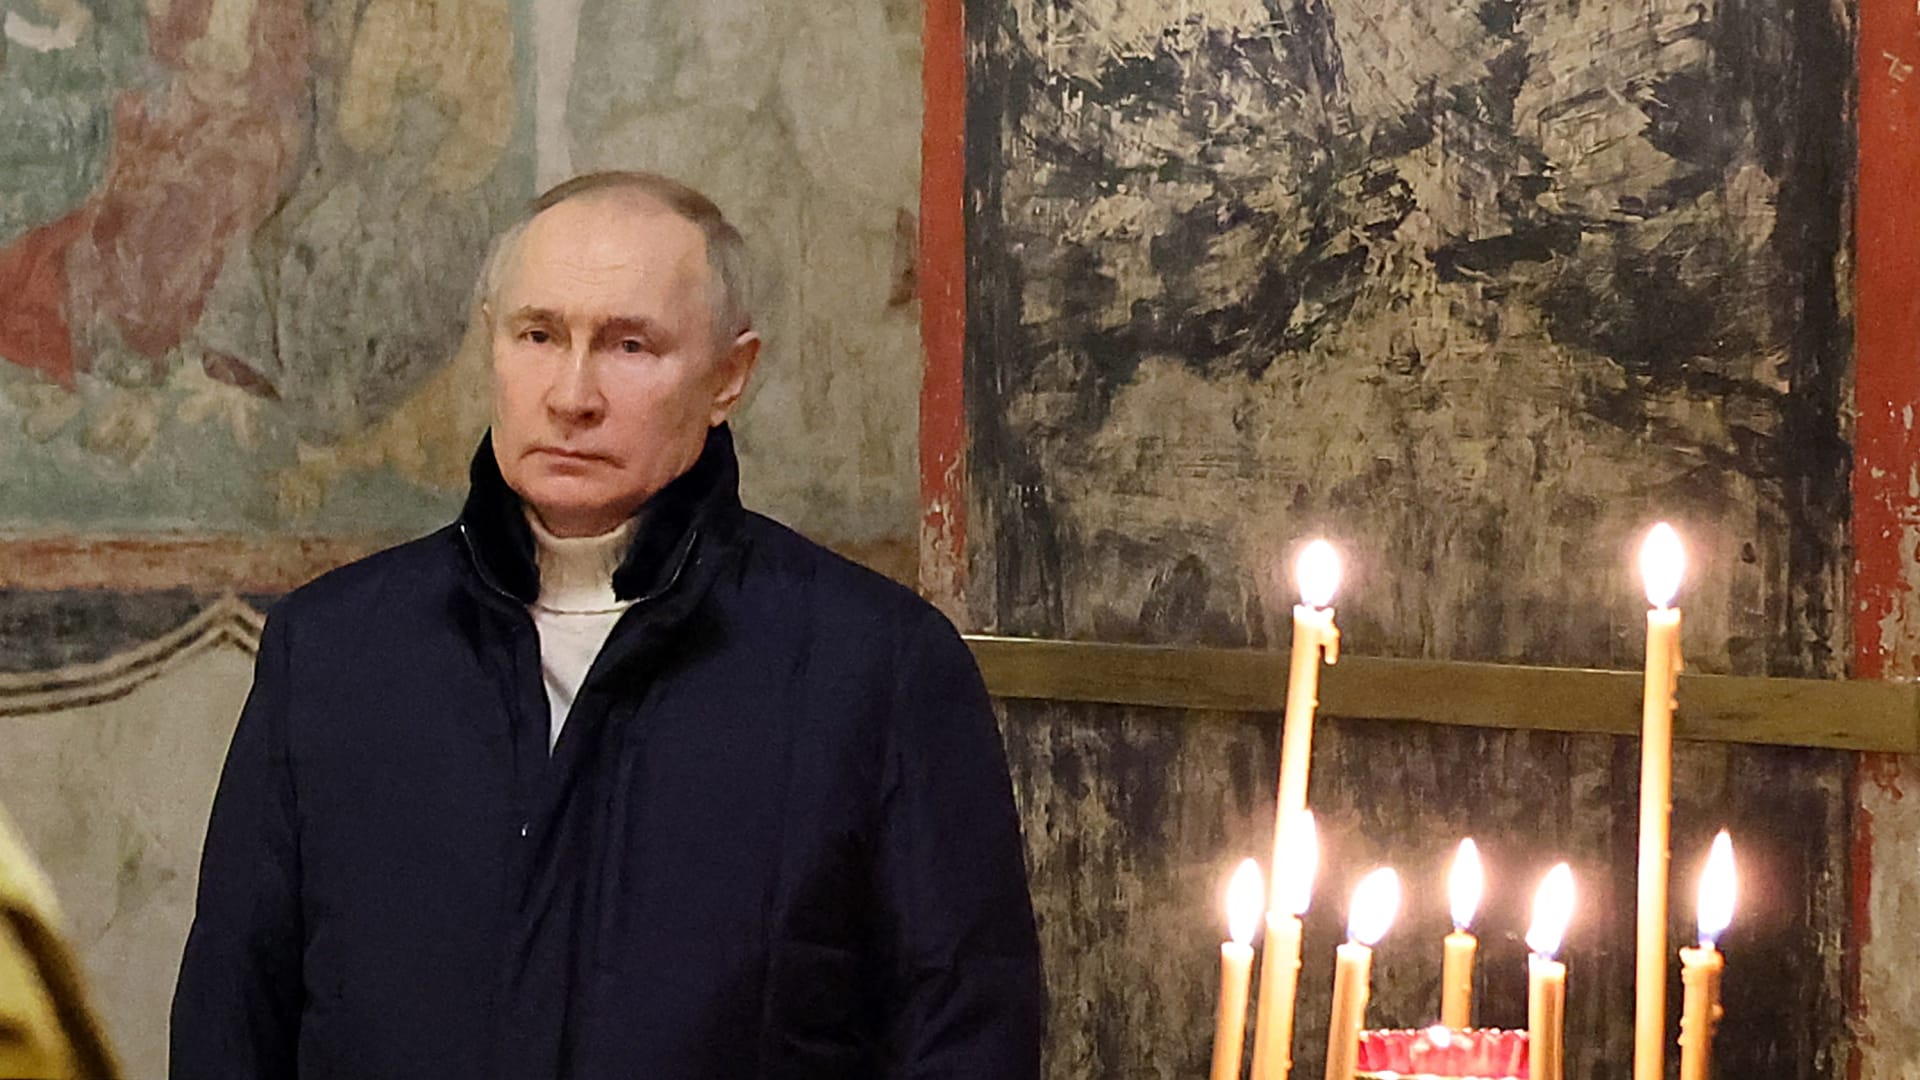 شاهد مضمون الرسالة التي وجهها بوتين بمناسبة العام الجديد